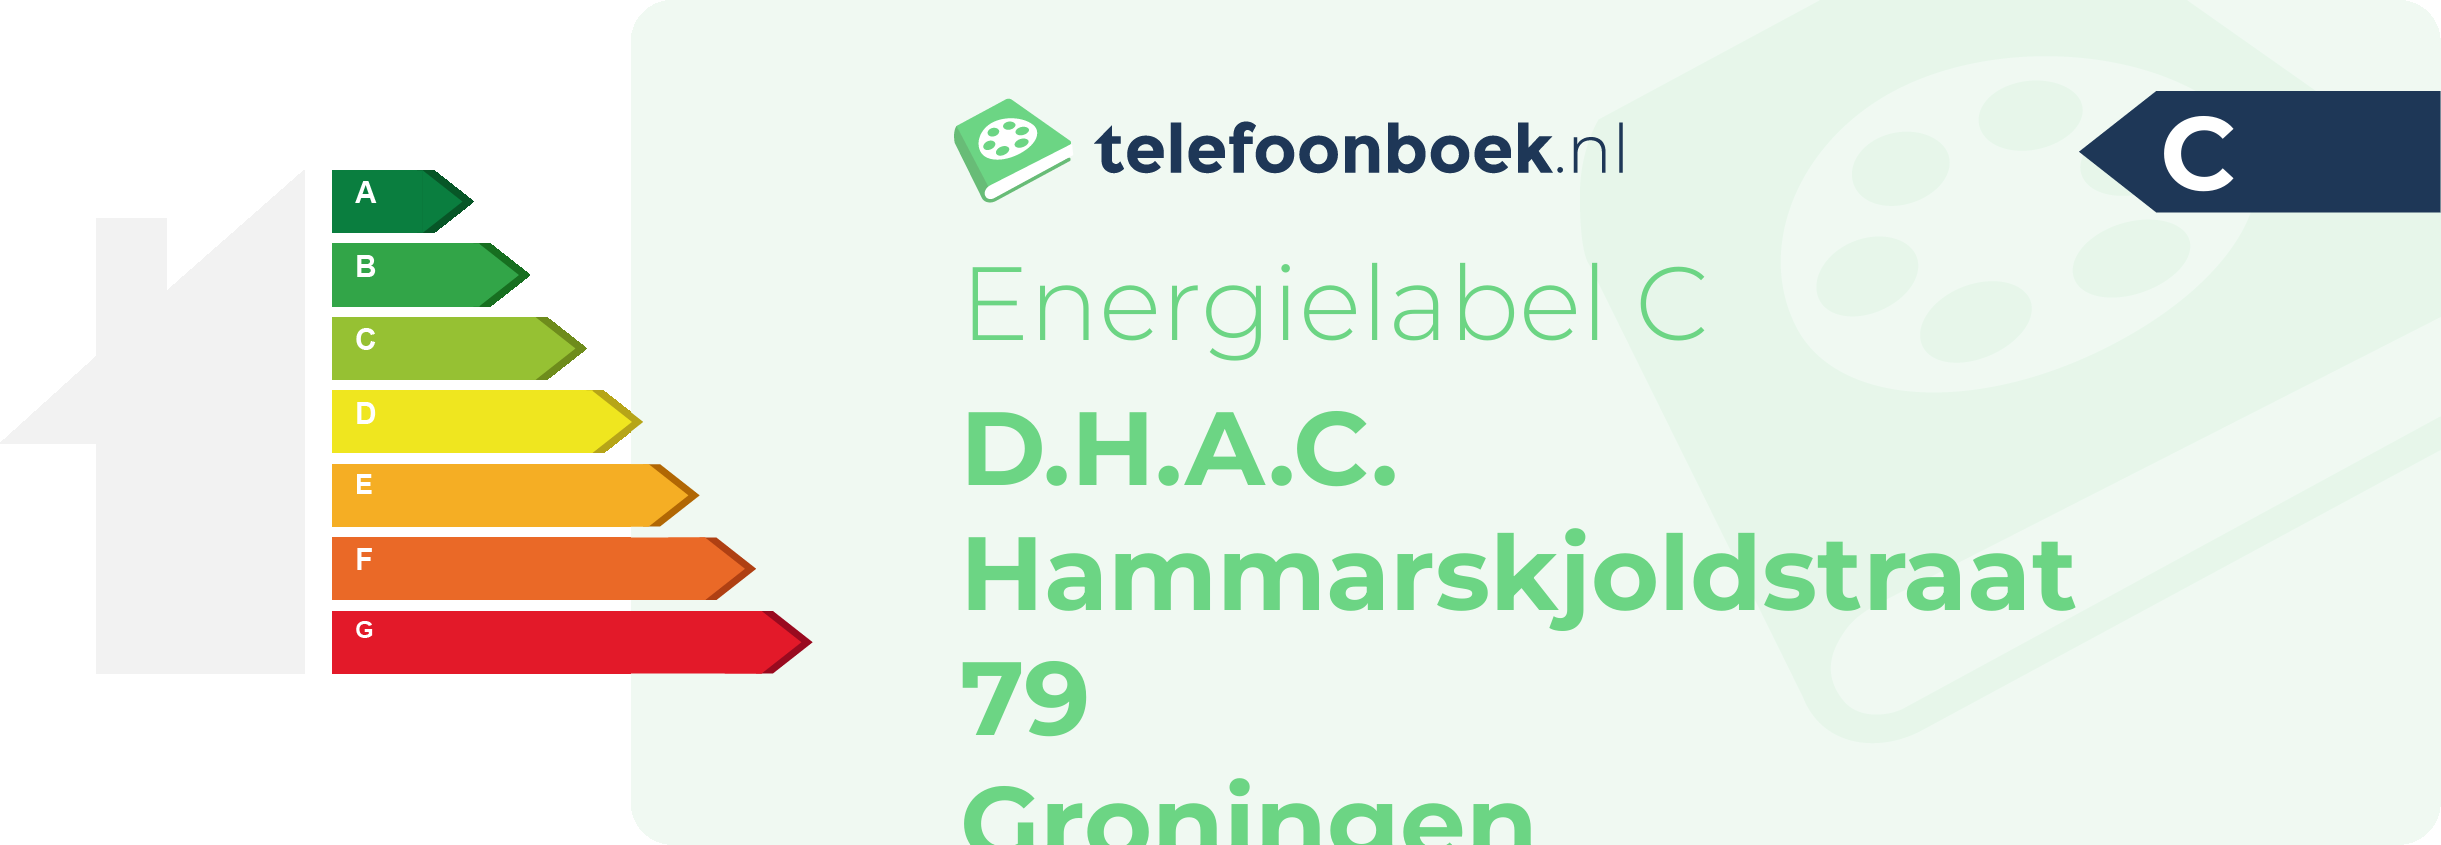 Energielabel D.H.A.C. Hammarskjoldstraat 79 Groningen